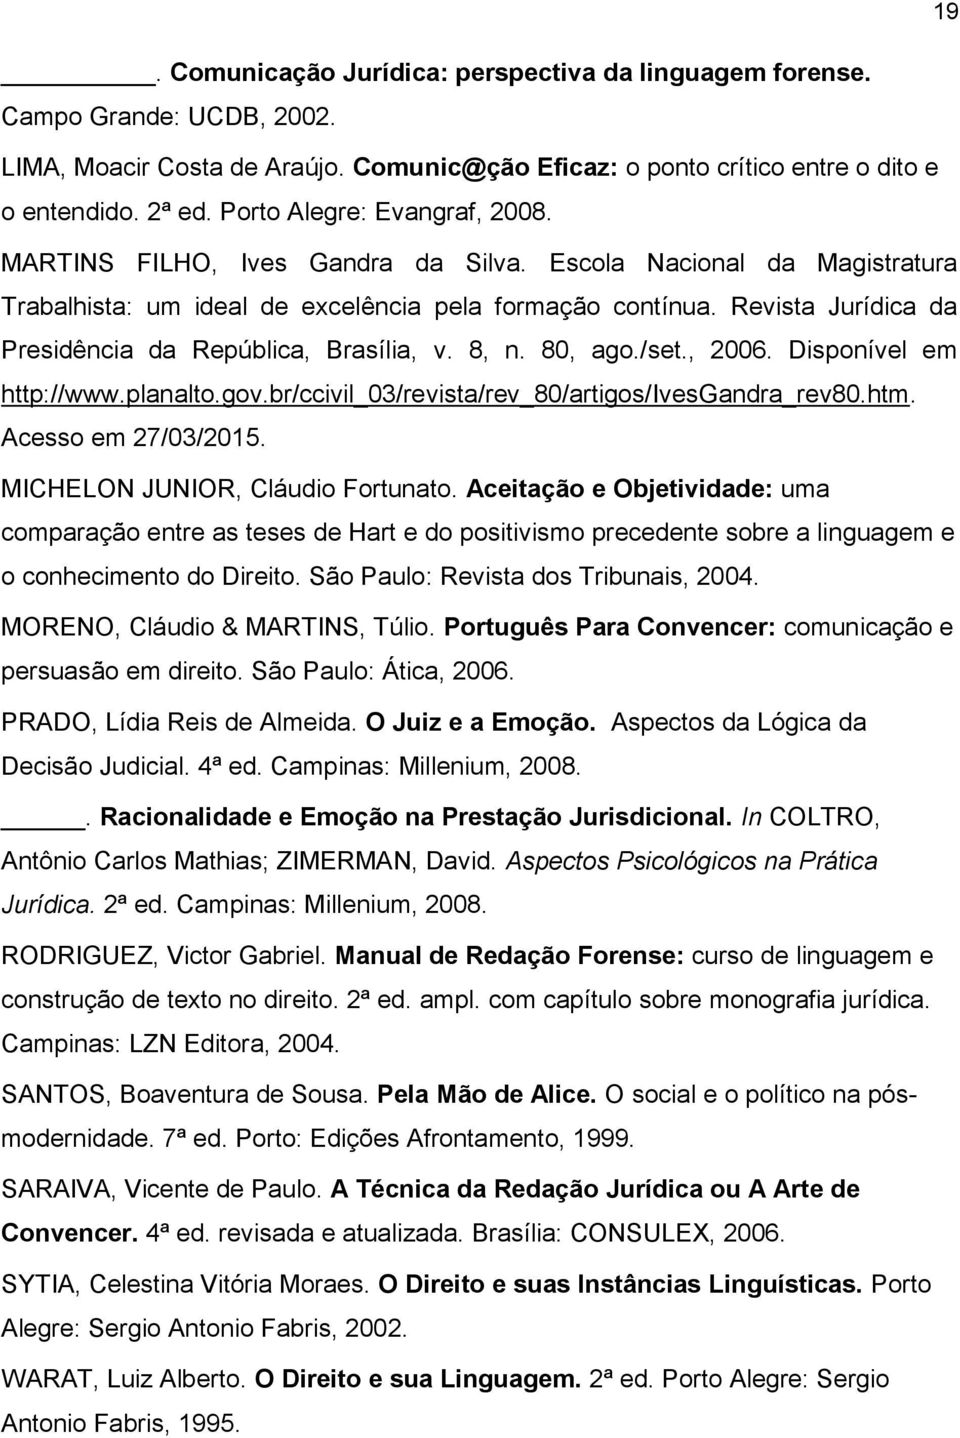 Revista Jurídica da Presidência da República, Brasília, v. 8, n. 80, ago./set., 2006. Disponível em http://www.planalto.gov.br/ccivil_03/revista/rev_80/artigos/ivesgandra_rev80.htm.